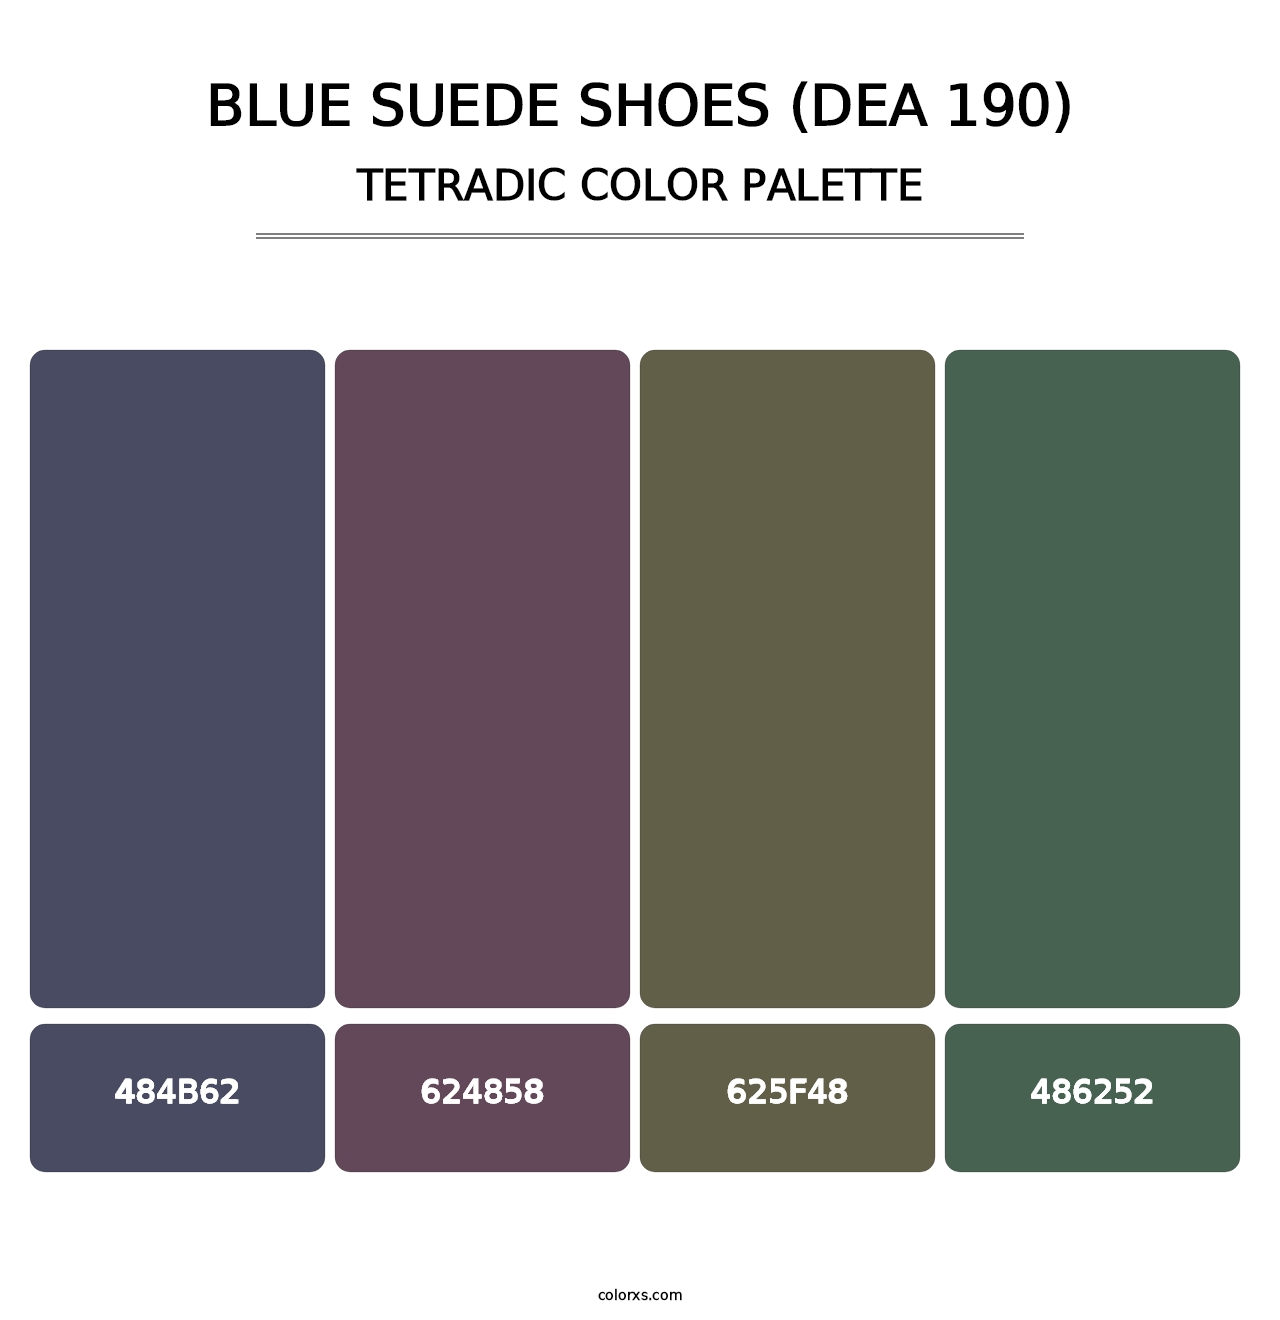 Blue Suede Shoes (DEA 190) - Tetradic Color Palette